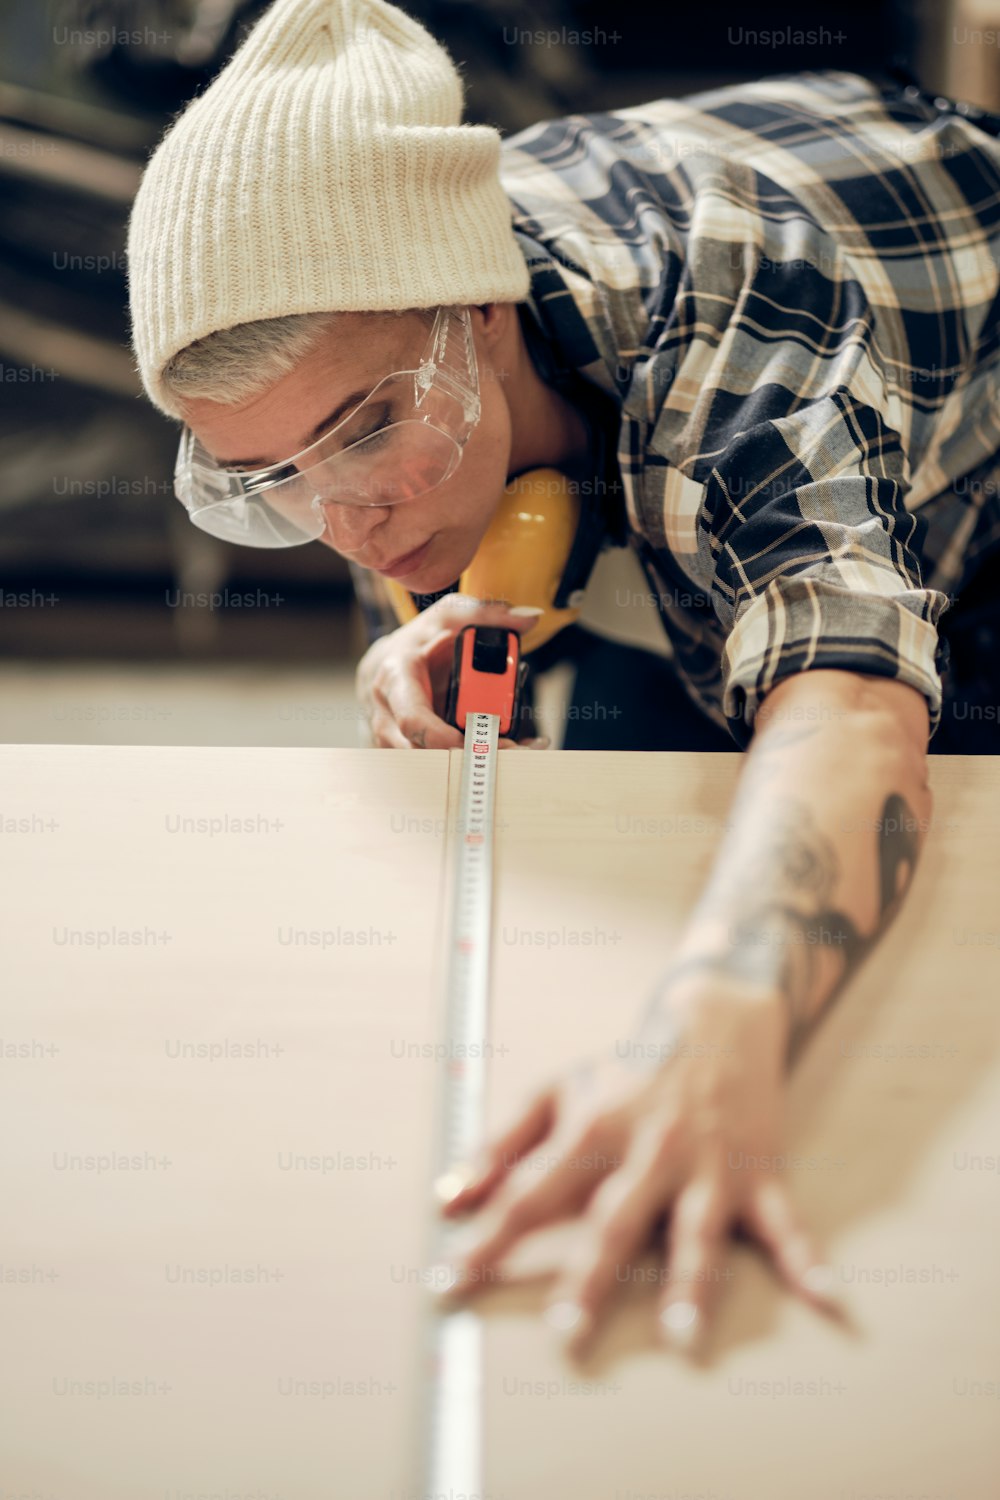 Ritratto di donna tatuata sui 40 anni che lavora in falegnameria con occhiali protettivi, misurando una tavola di legno. Occupazione maschile, lavoro maschile, concetto di uguaglianza di genere